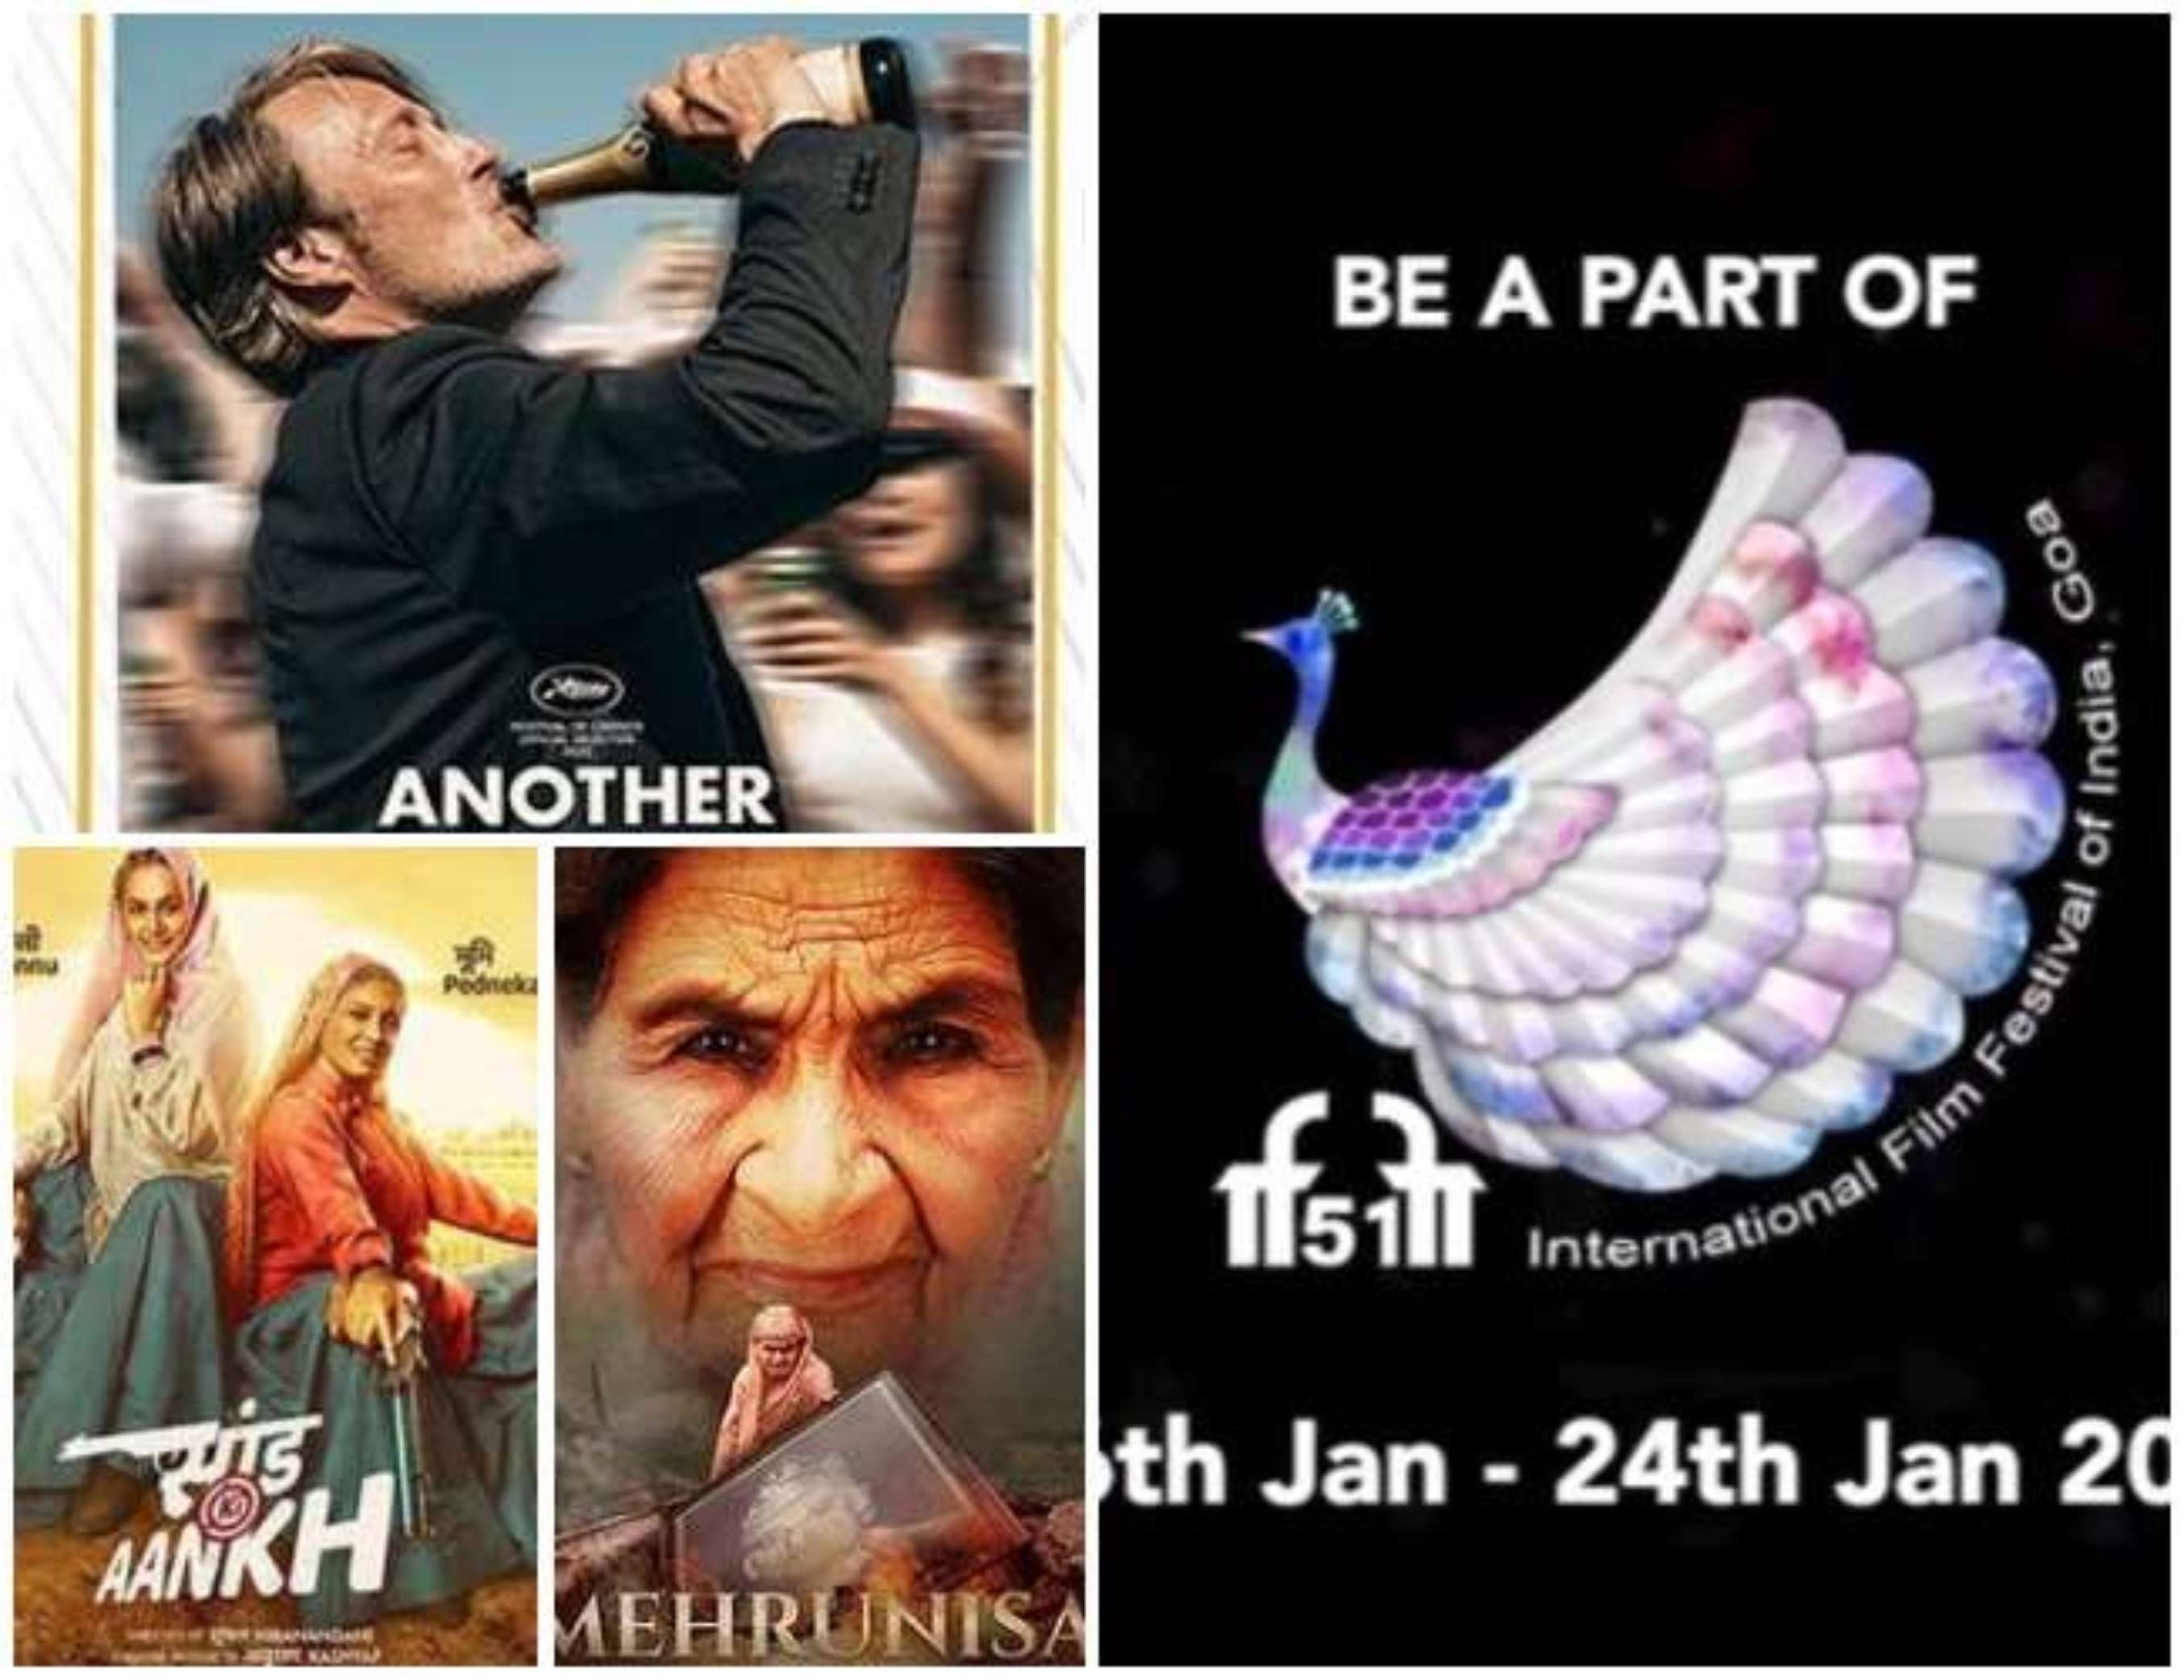 गोवा में 16 से 24 जनवरी तक चलेगा अंतरराष्ट्रीय फ़िल्म फेस्टिवल, 15 फ़िल्मों के बीच होगा मुक़ाबला